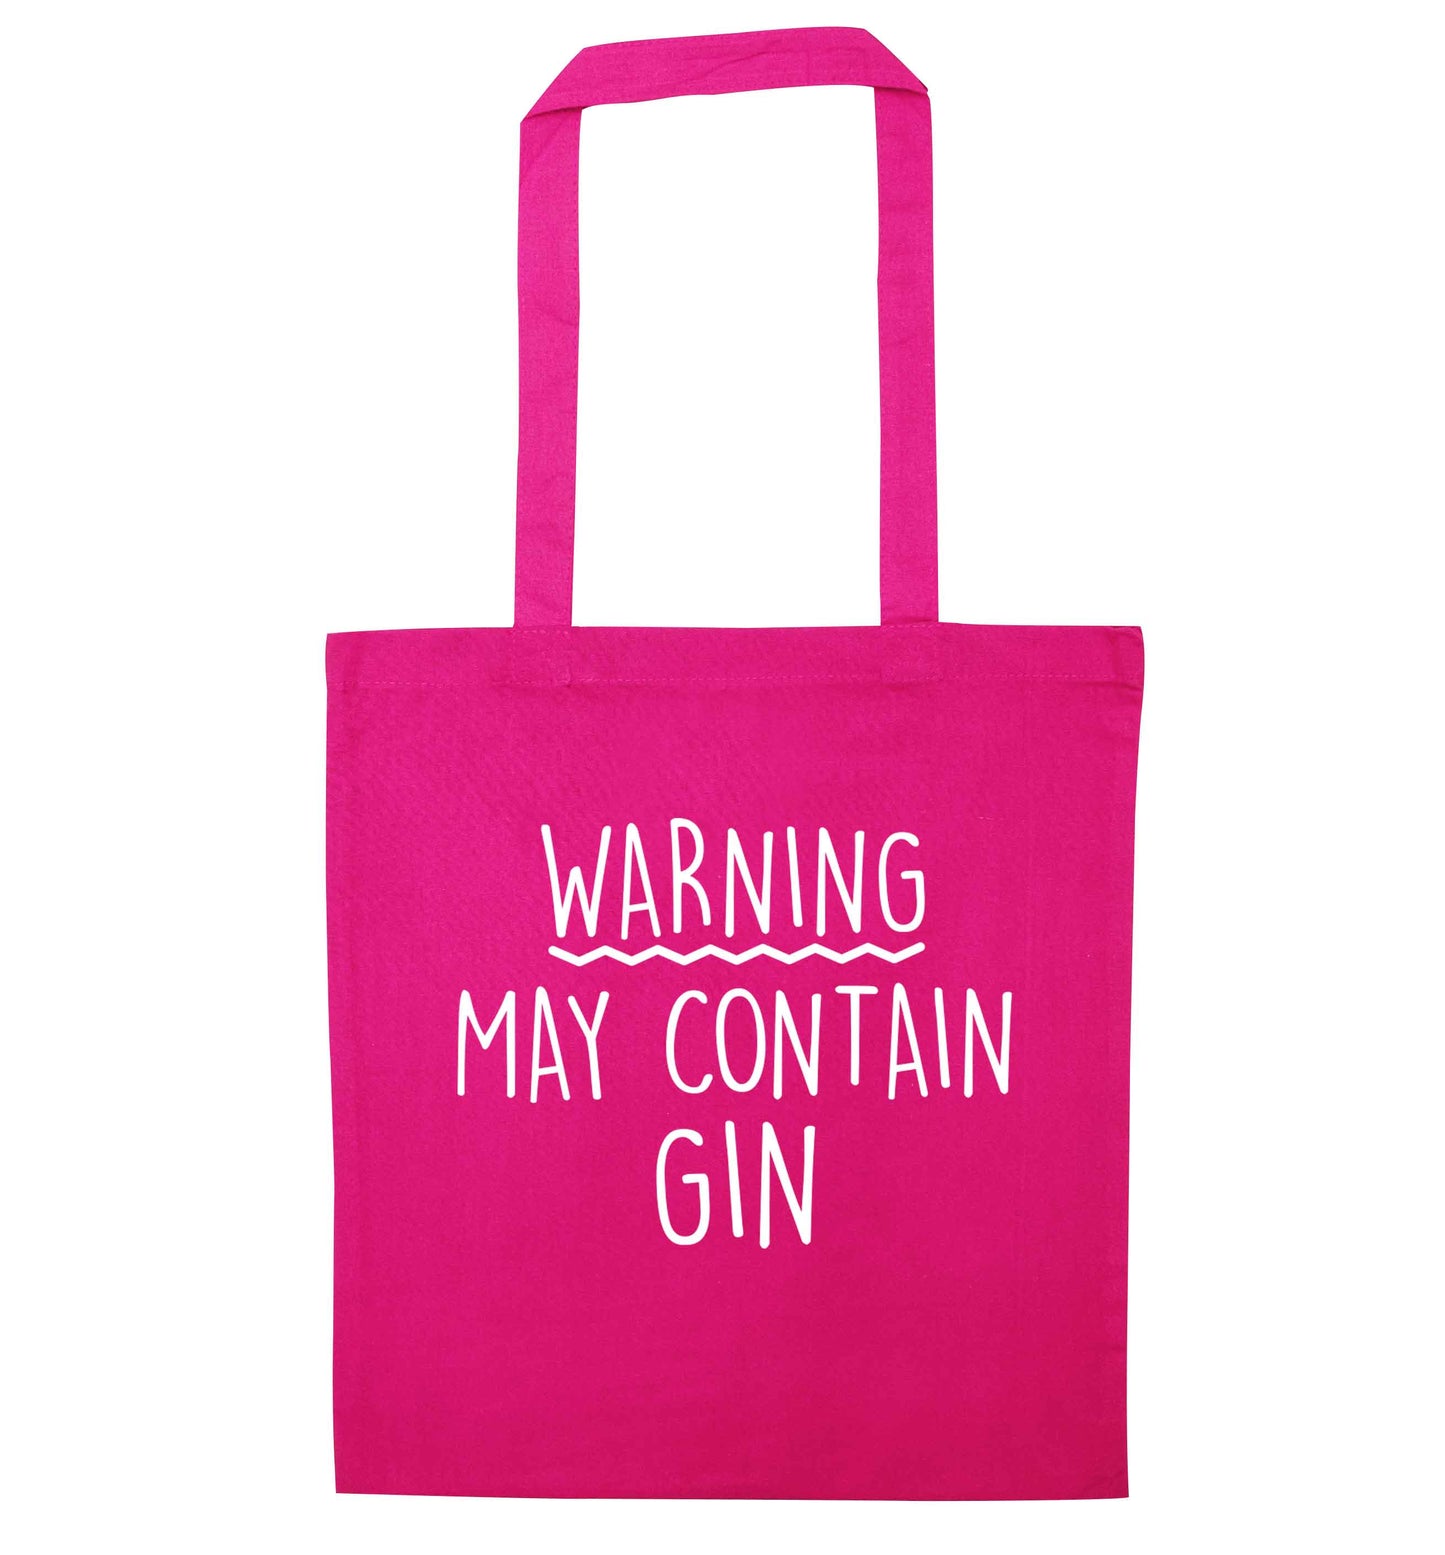 Warning may contain gin pink tote bag